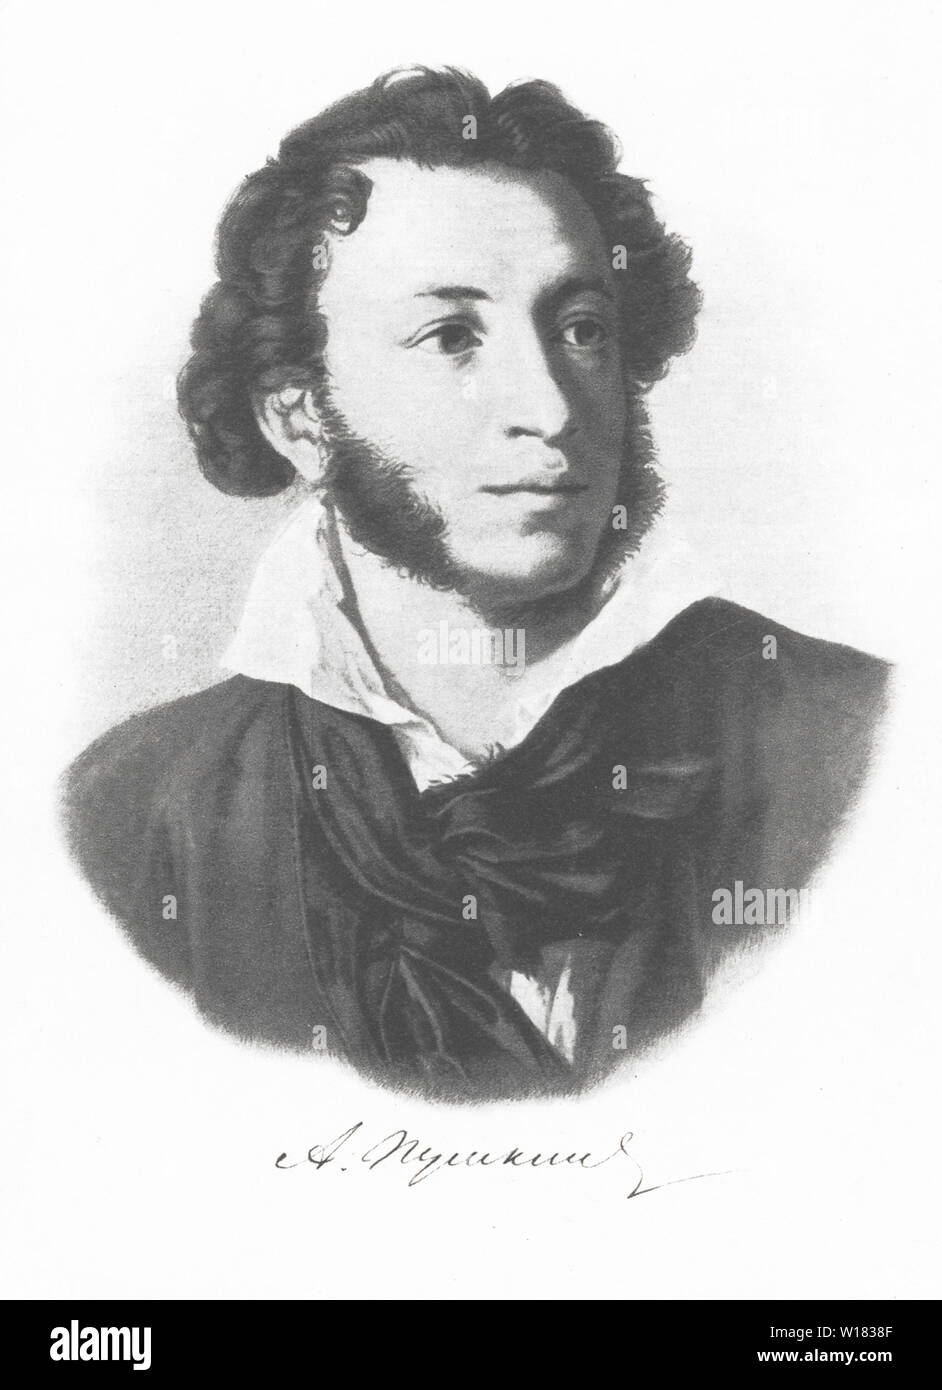 лев сергеевич пушкин фото